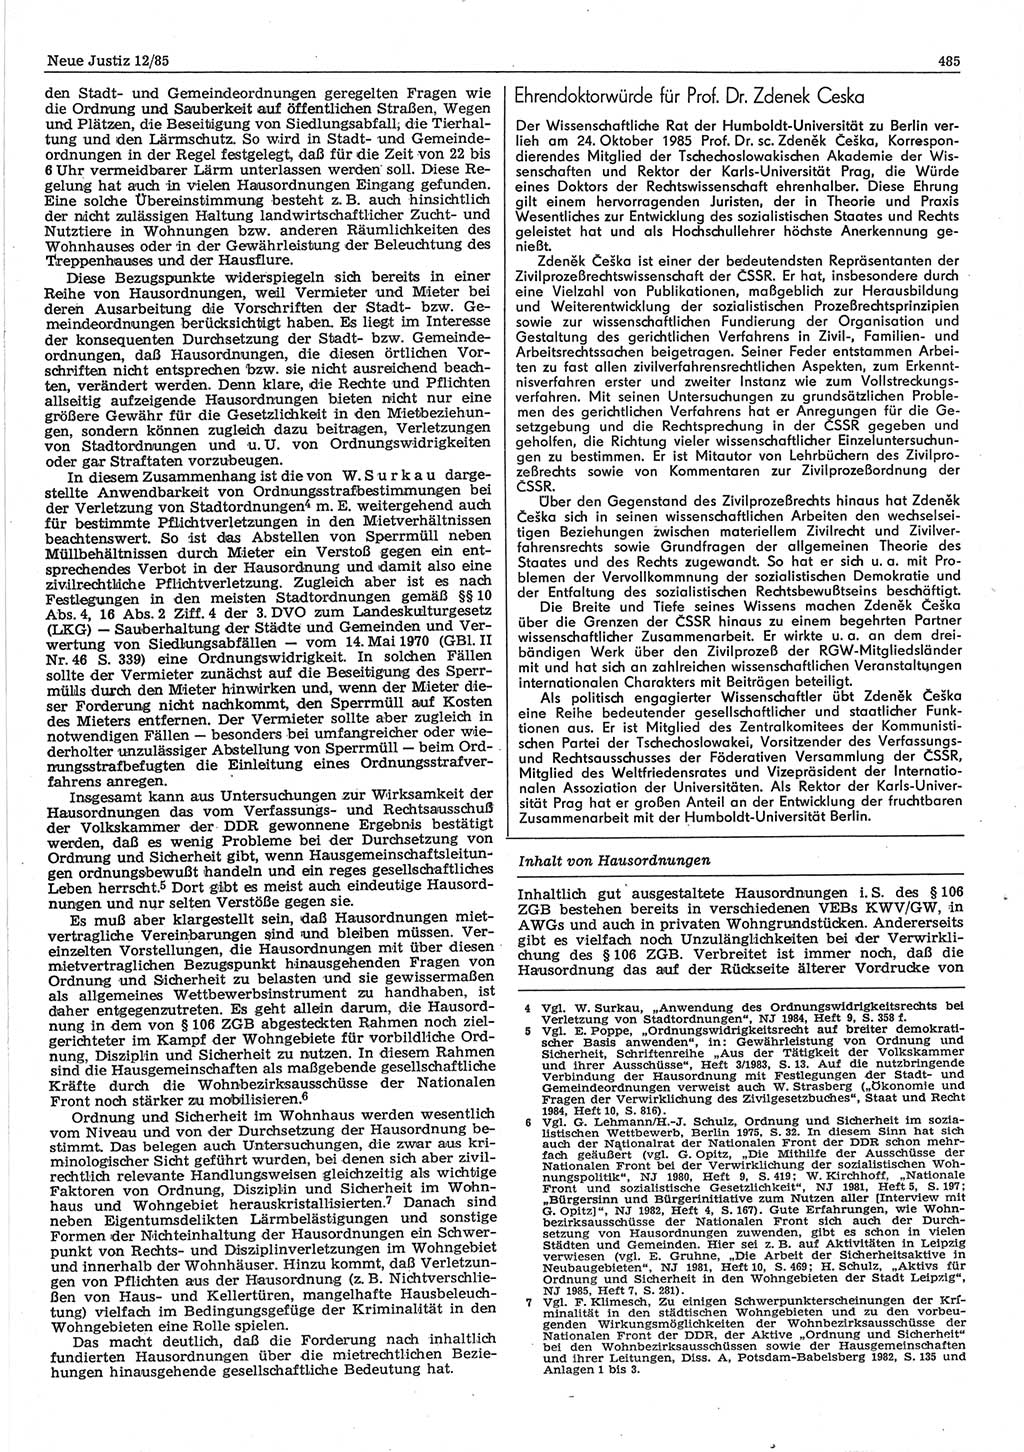 Neue Justiz (NJ), Zeitschrift für sozialistisches Recht und Gesetzlichkeit [Deutsche Demokratische Republik (DDR)], 39. Jahrgang 1985, Seite 485 (NJ DDR 1985, S. 485)